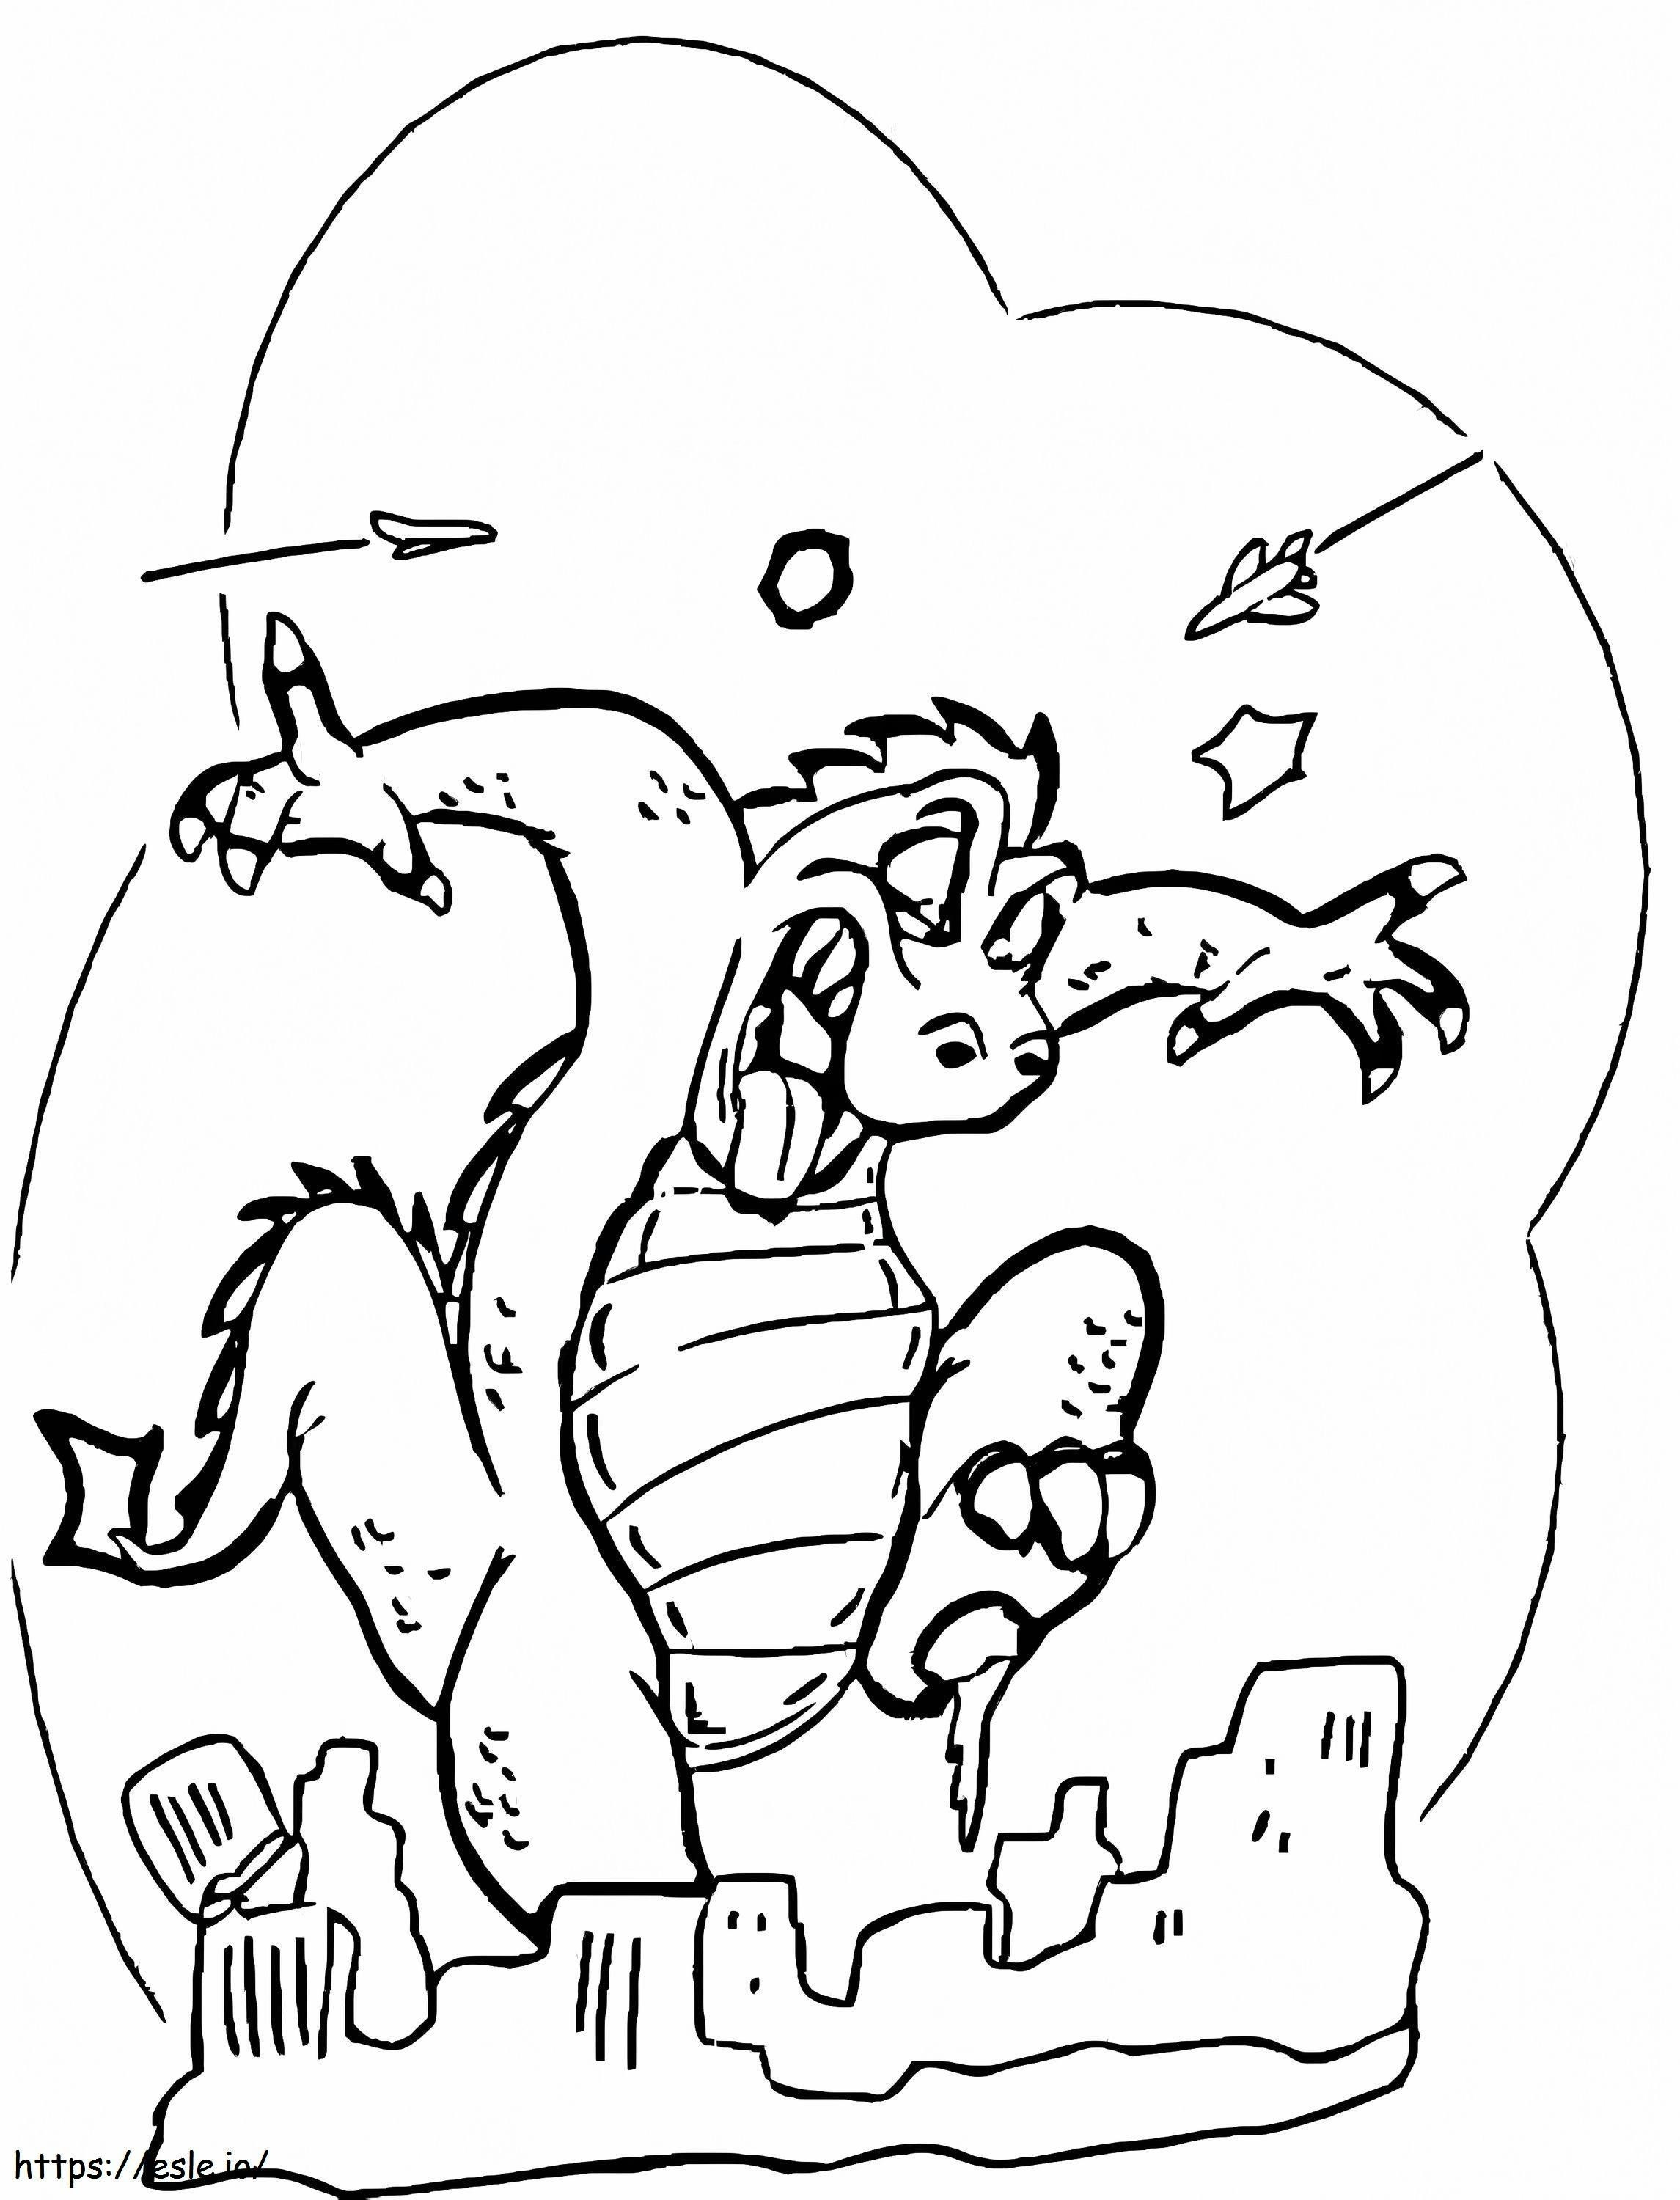 Godzilla atakuje miasto kolorowanka